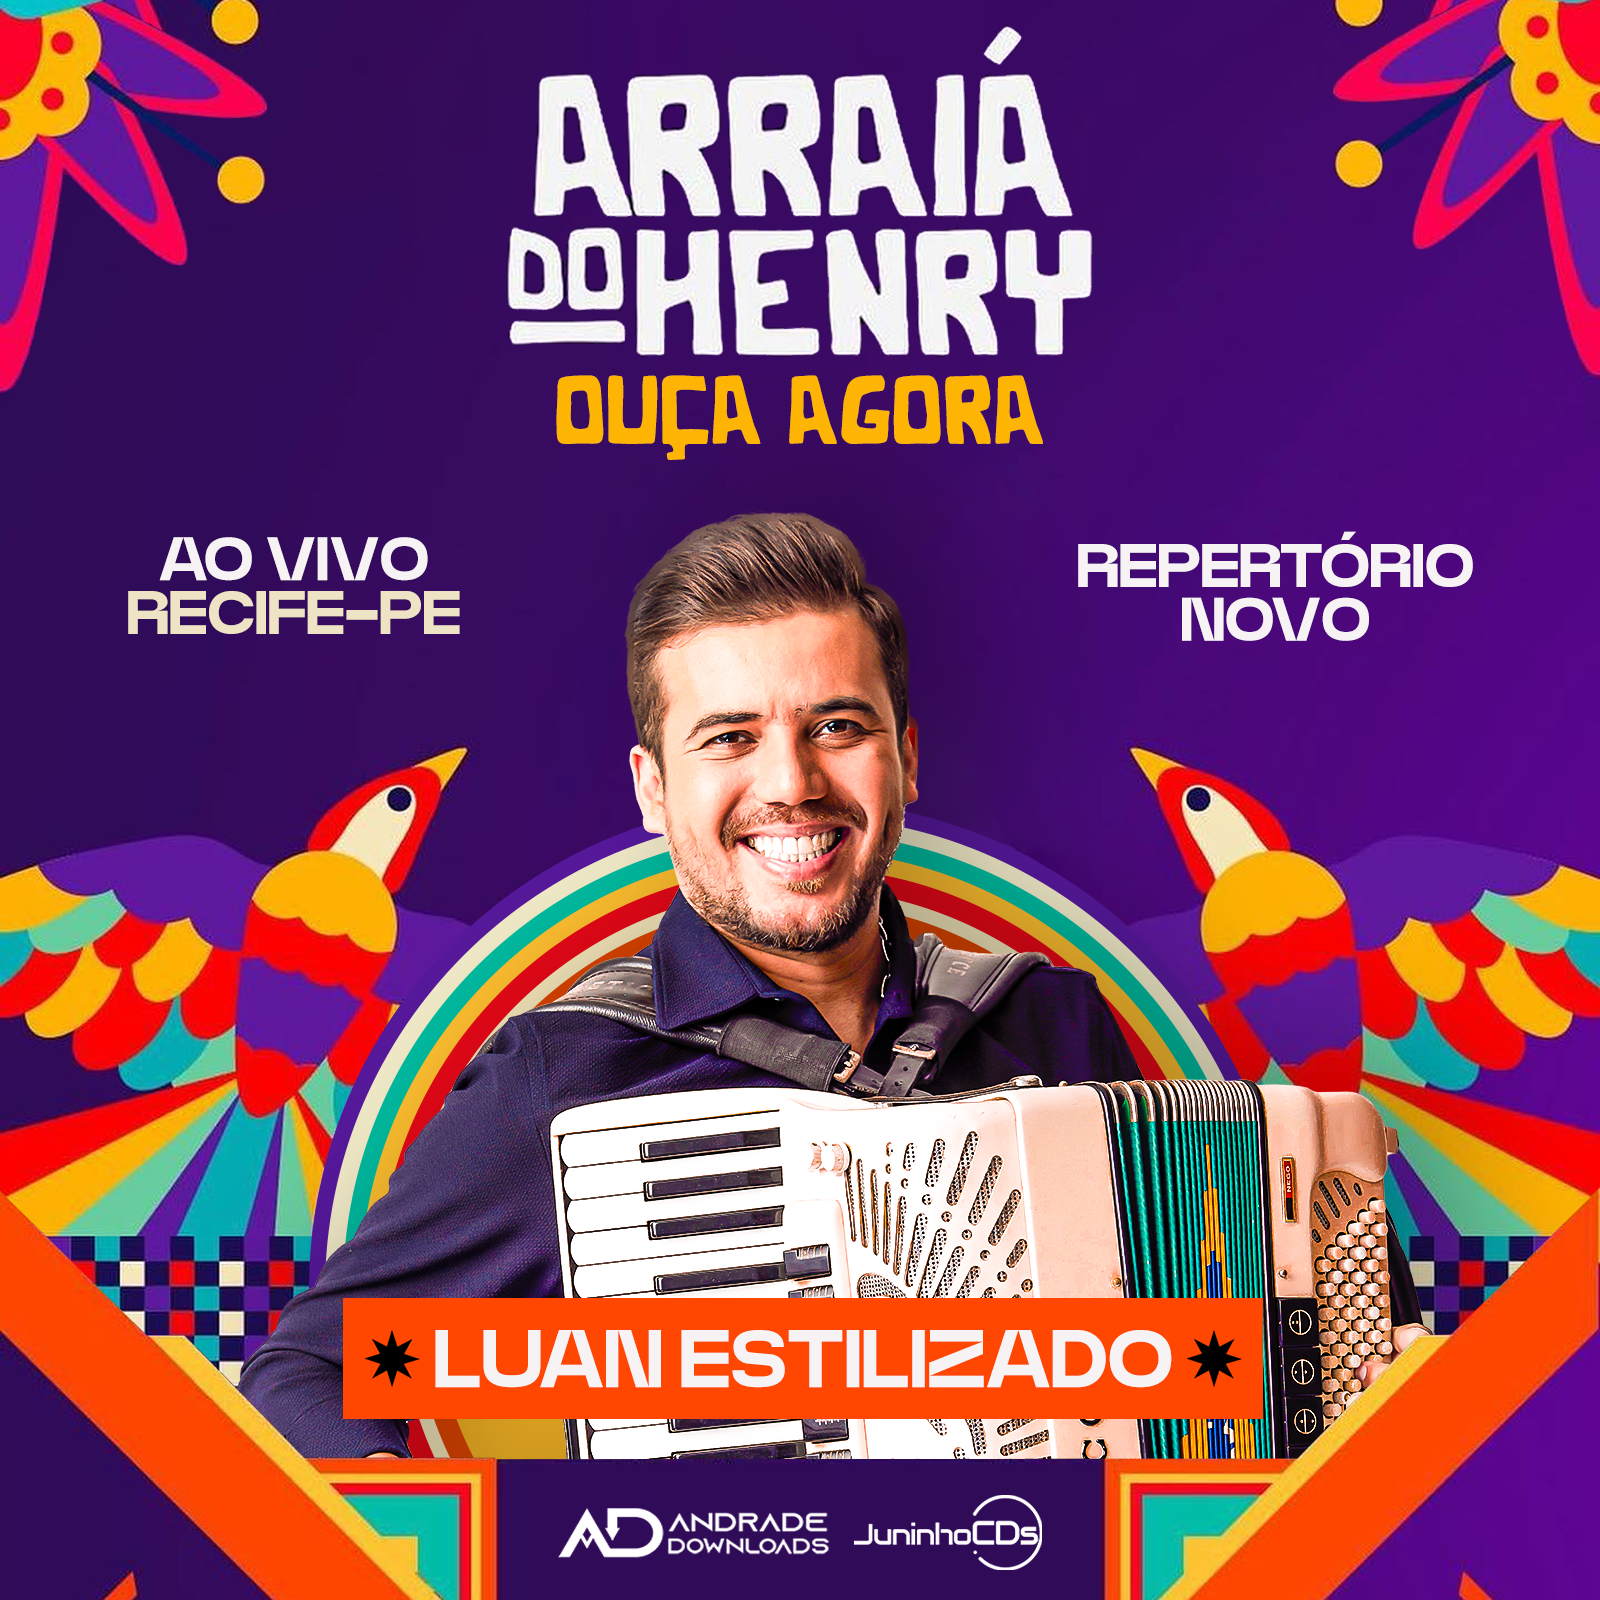 LUAN FEED ARRAIA DO HENRY © ANDRADE DOWNLOADS - Baixar CDs, Baixar Musicas e Baixar Shows